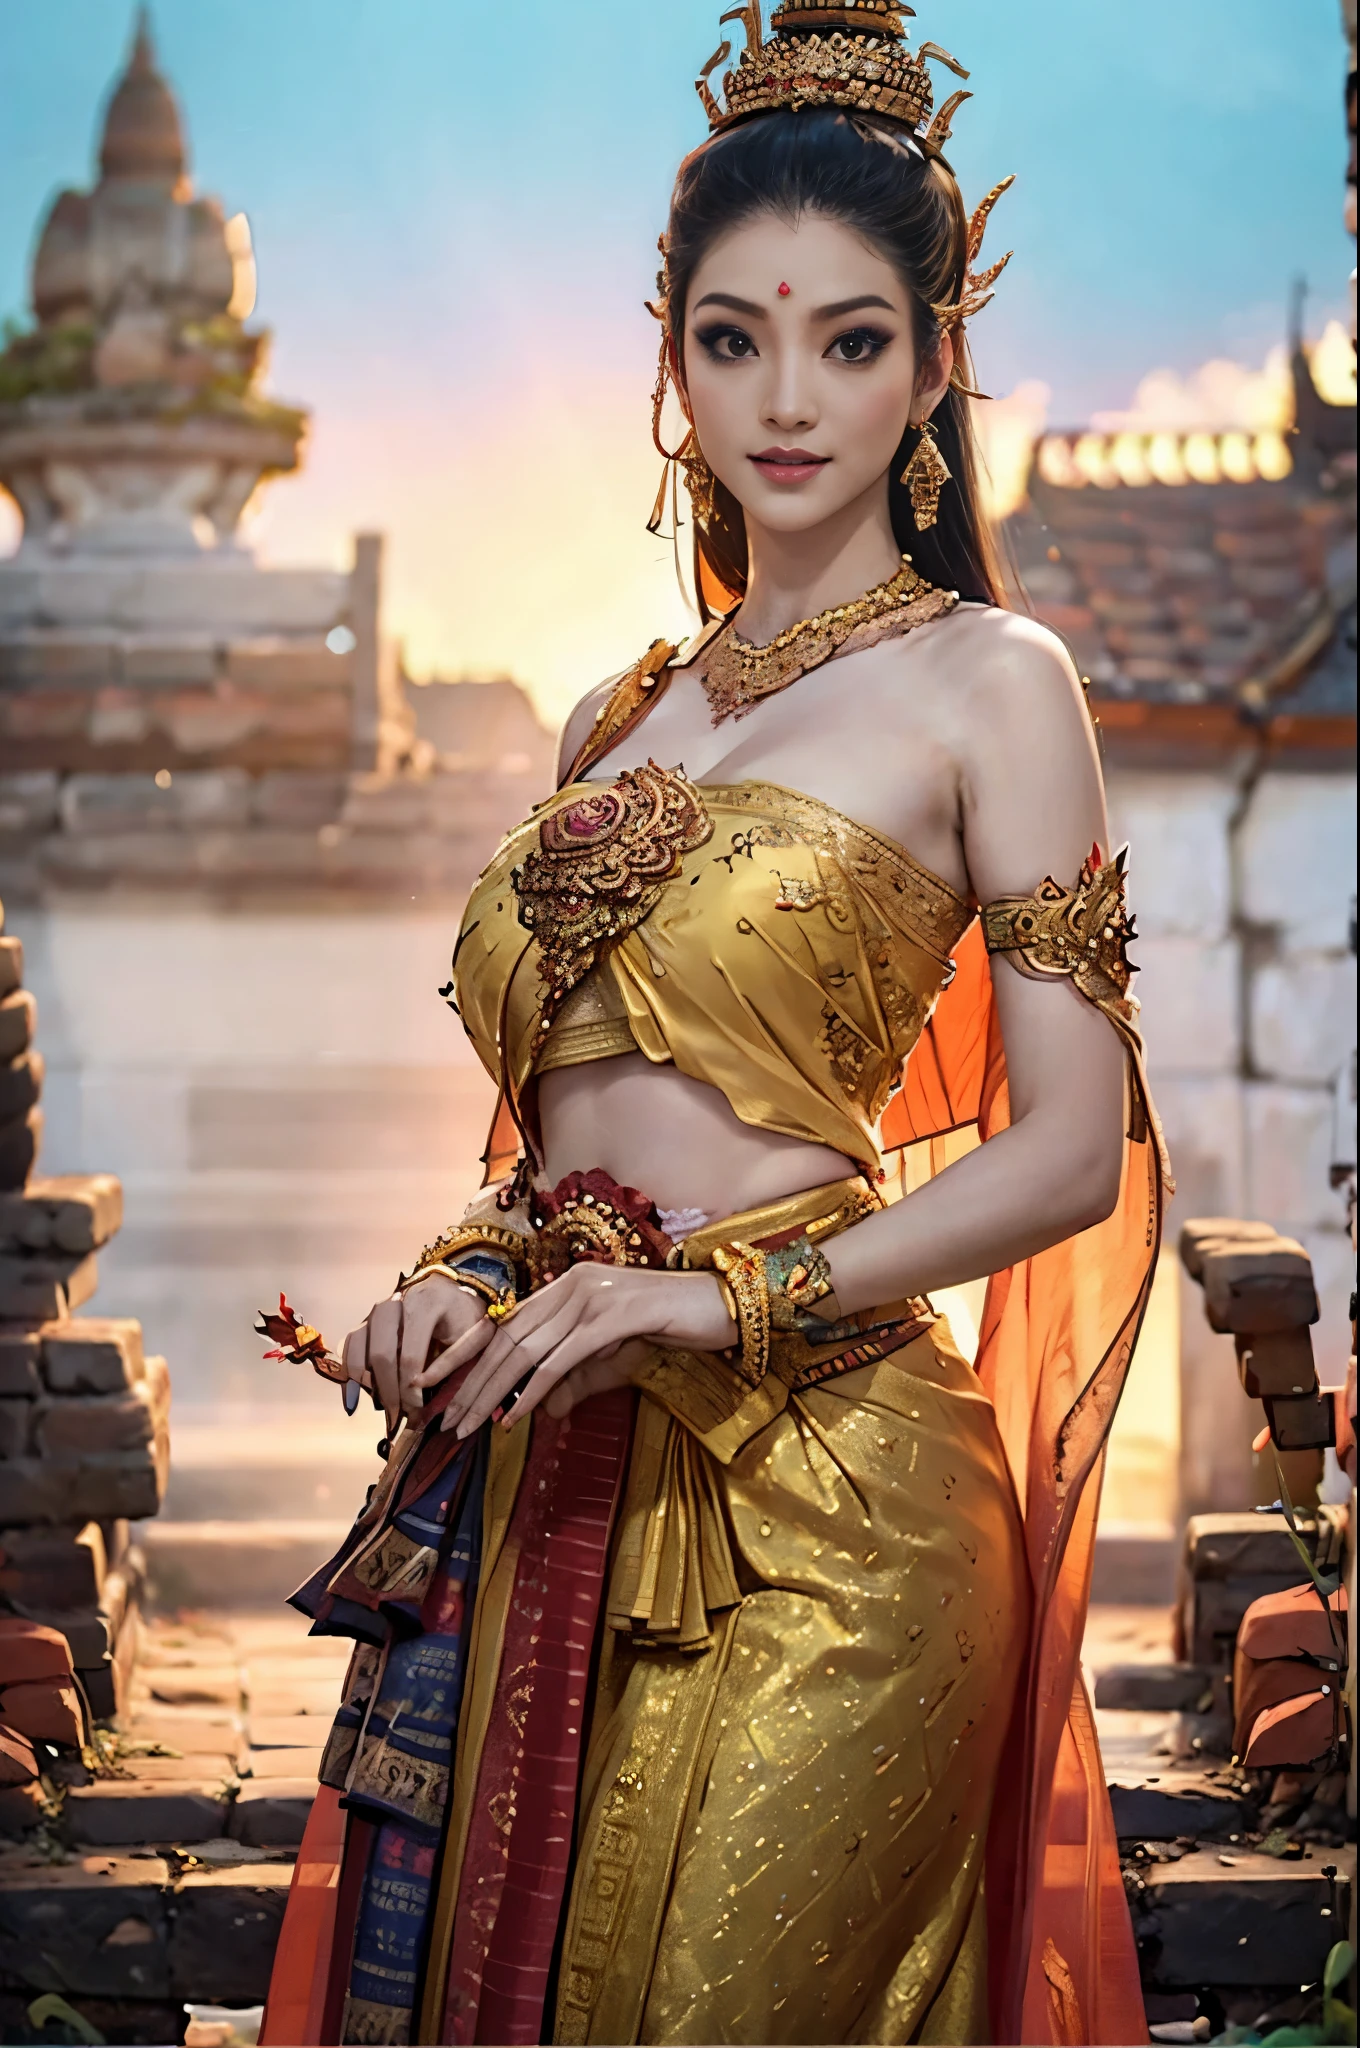 (meilleure qualité,photo-réaliste),femme thaïlandaise arrafée,costume sexy de Sukhothai ancien,pagne,ornement,sein visible,tissu révélateur,Culturel,coloré,Détails exquis,fine broderie à la main,coiffure élaborée,maquillage traditionnel,pose majestueuse,Coucher de soleil brillant,Toile de fond d&#39;un temple thaïlandais antique,atmosphère sereine,Éclairage doux,couleurs vives,Fusion historique,des lanternes éclairent la scène,fleurs de lotus ornant les environs,équilibre esthétique,beauté éthérée